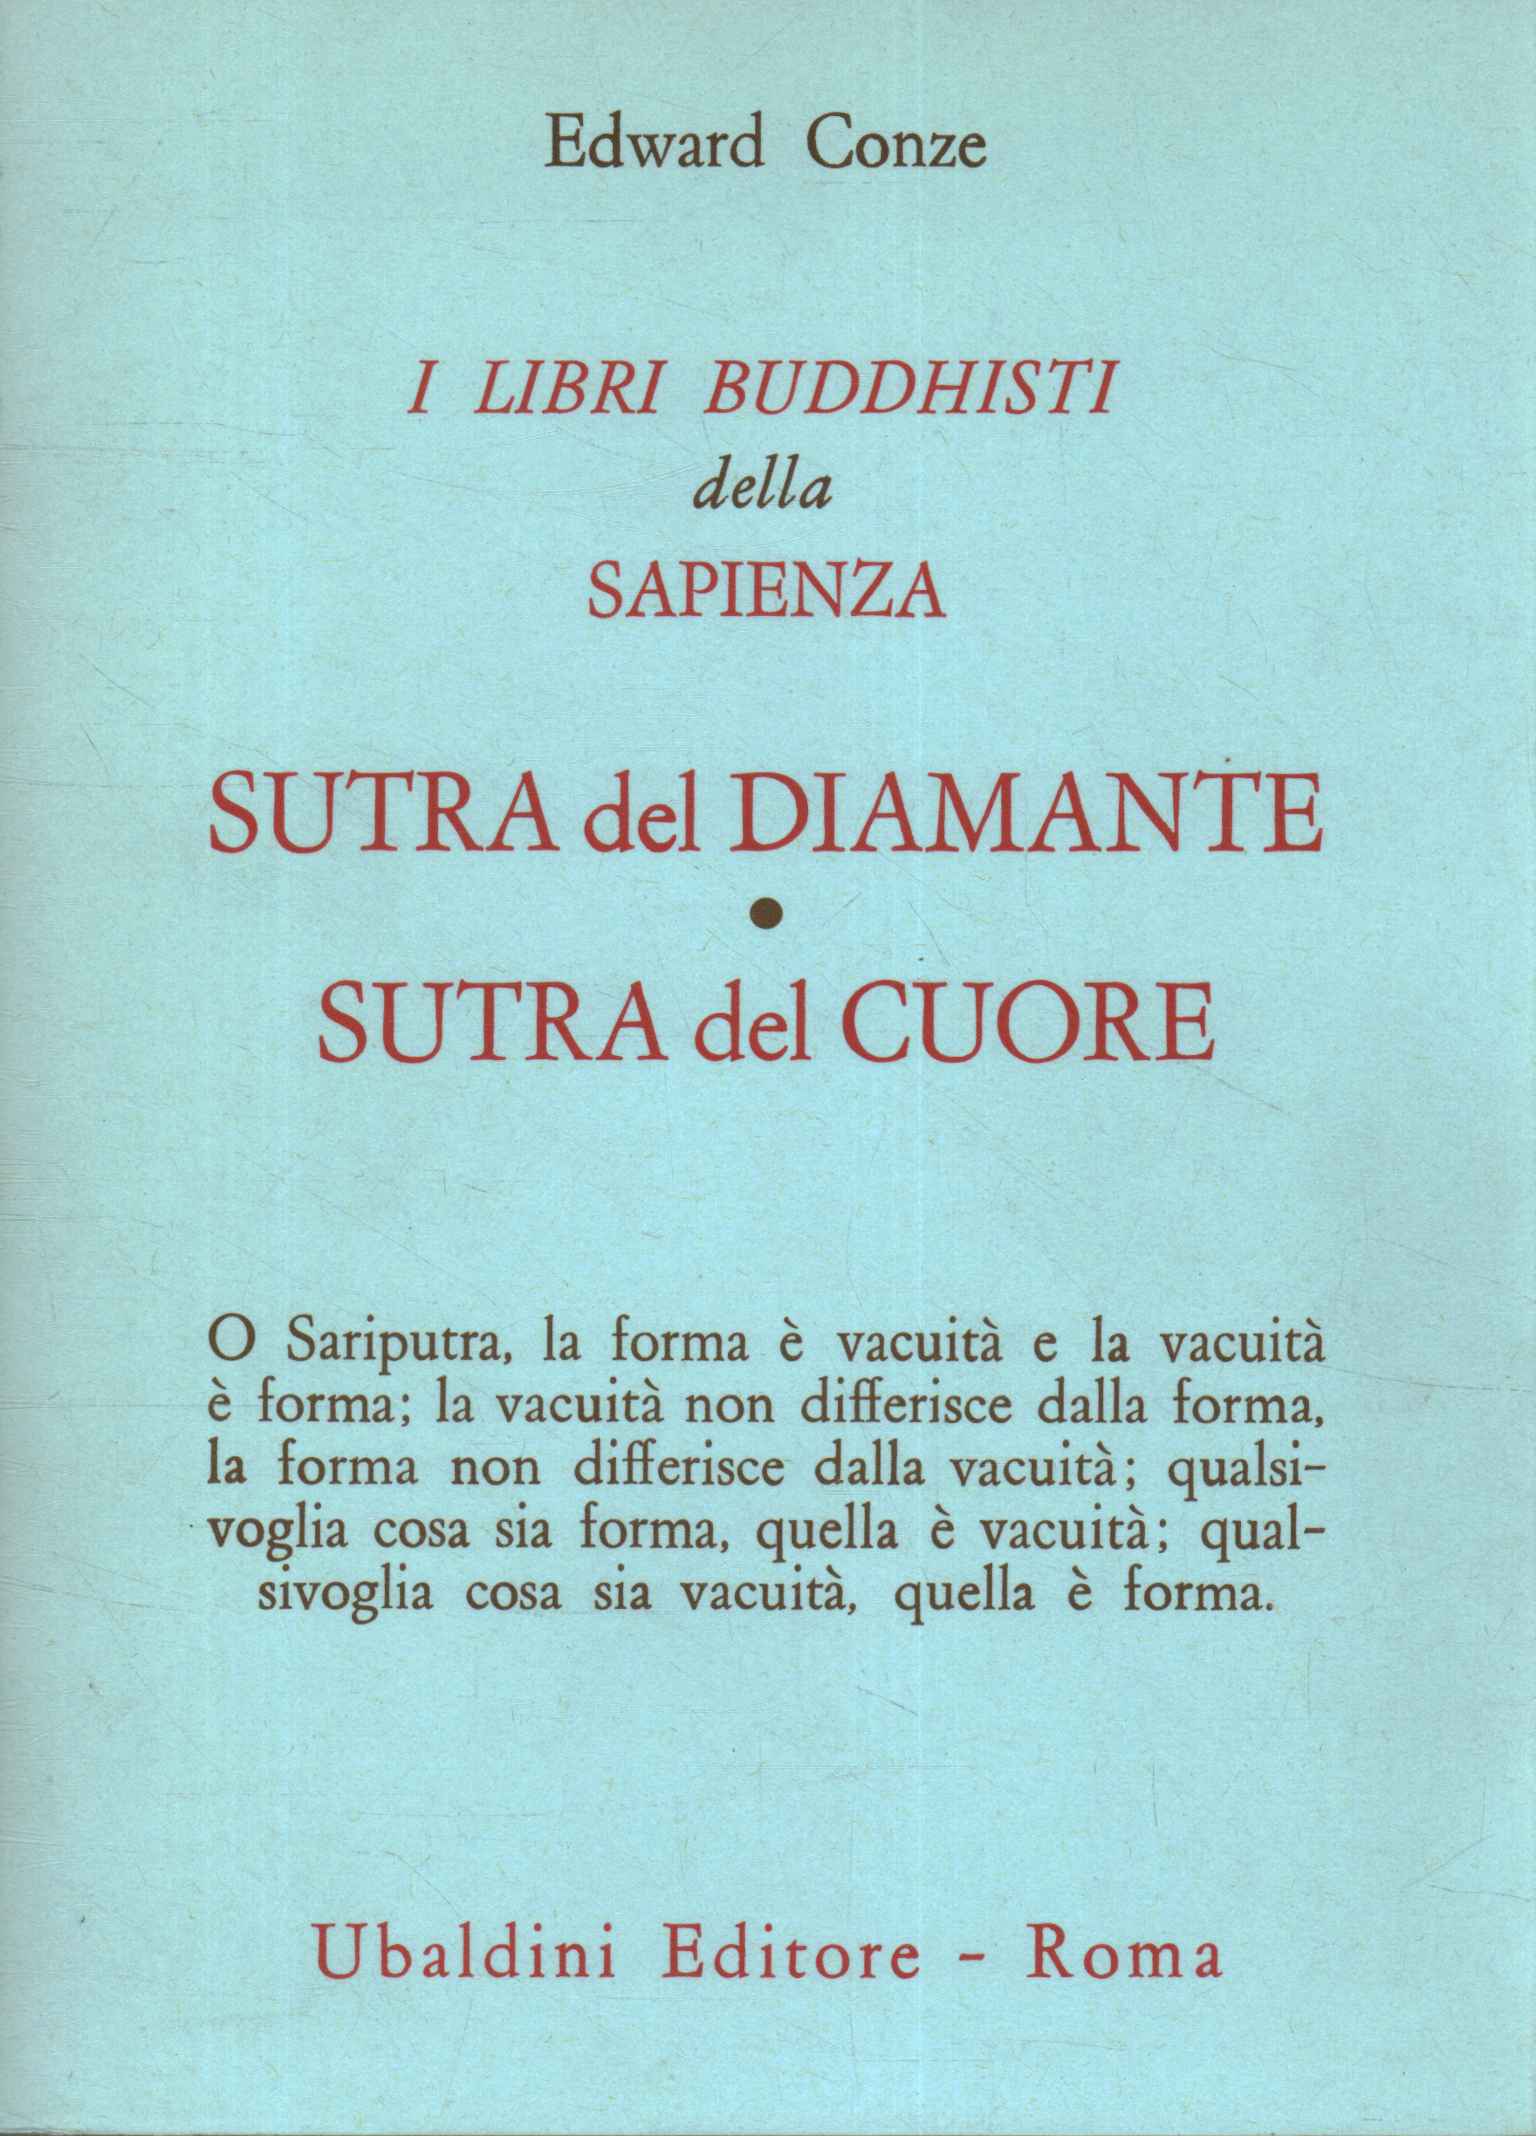 Libros budistas de sabiduría.